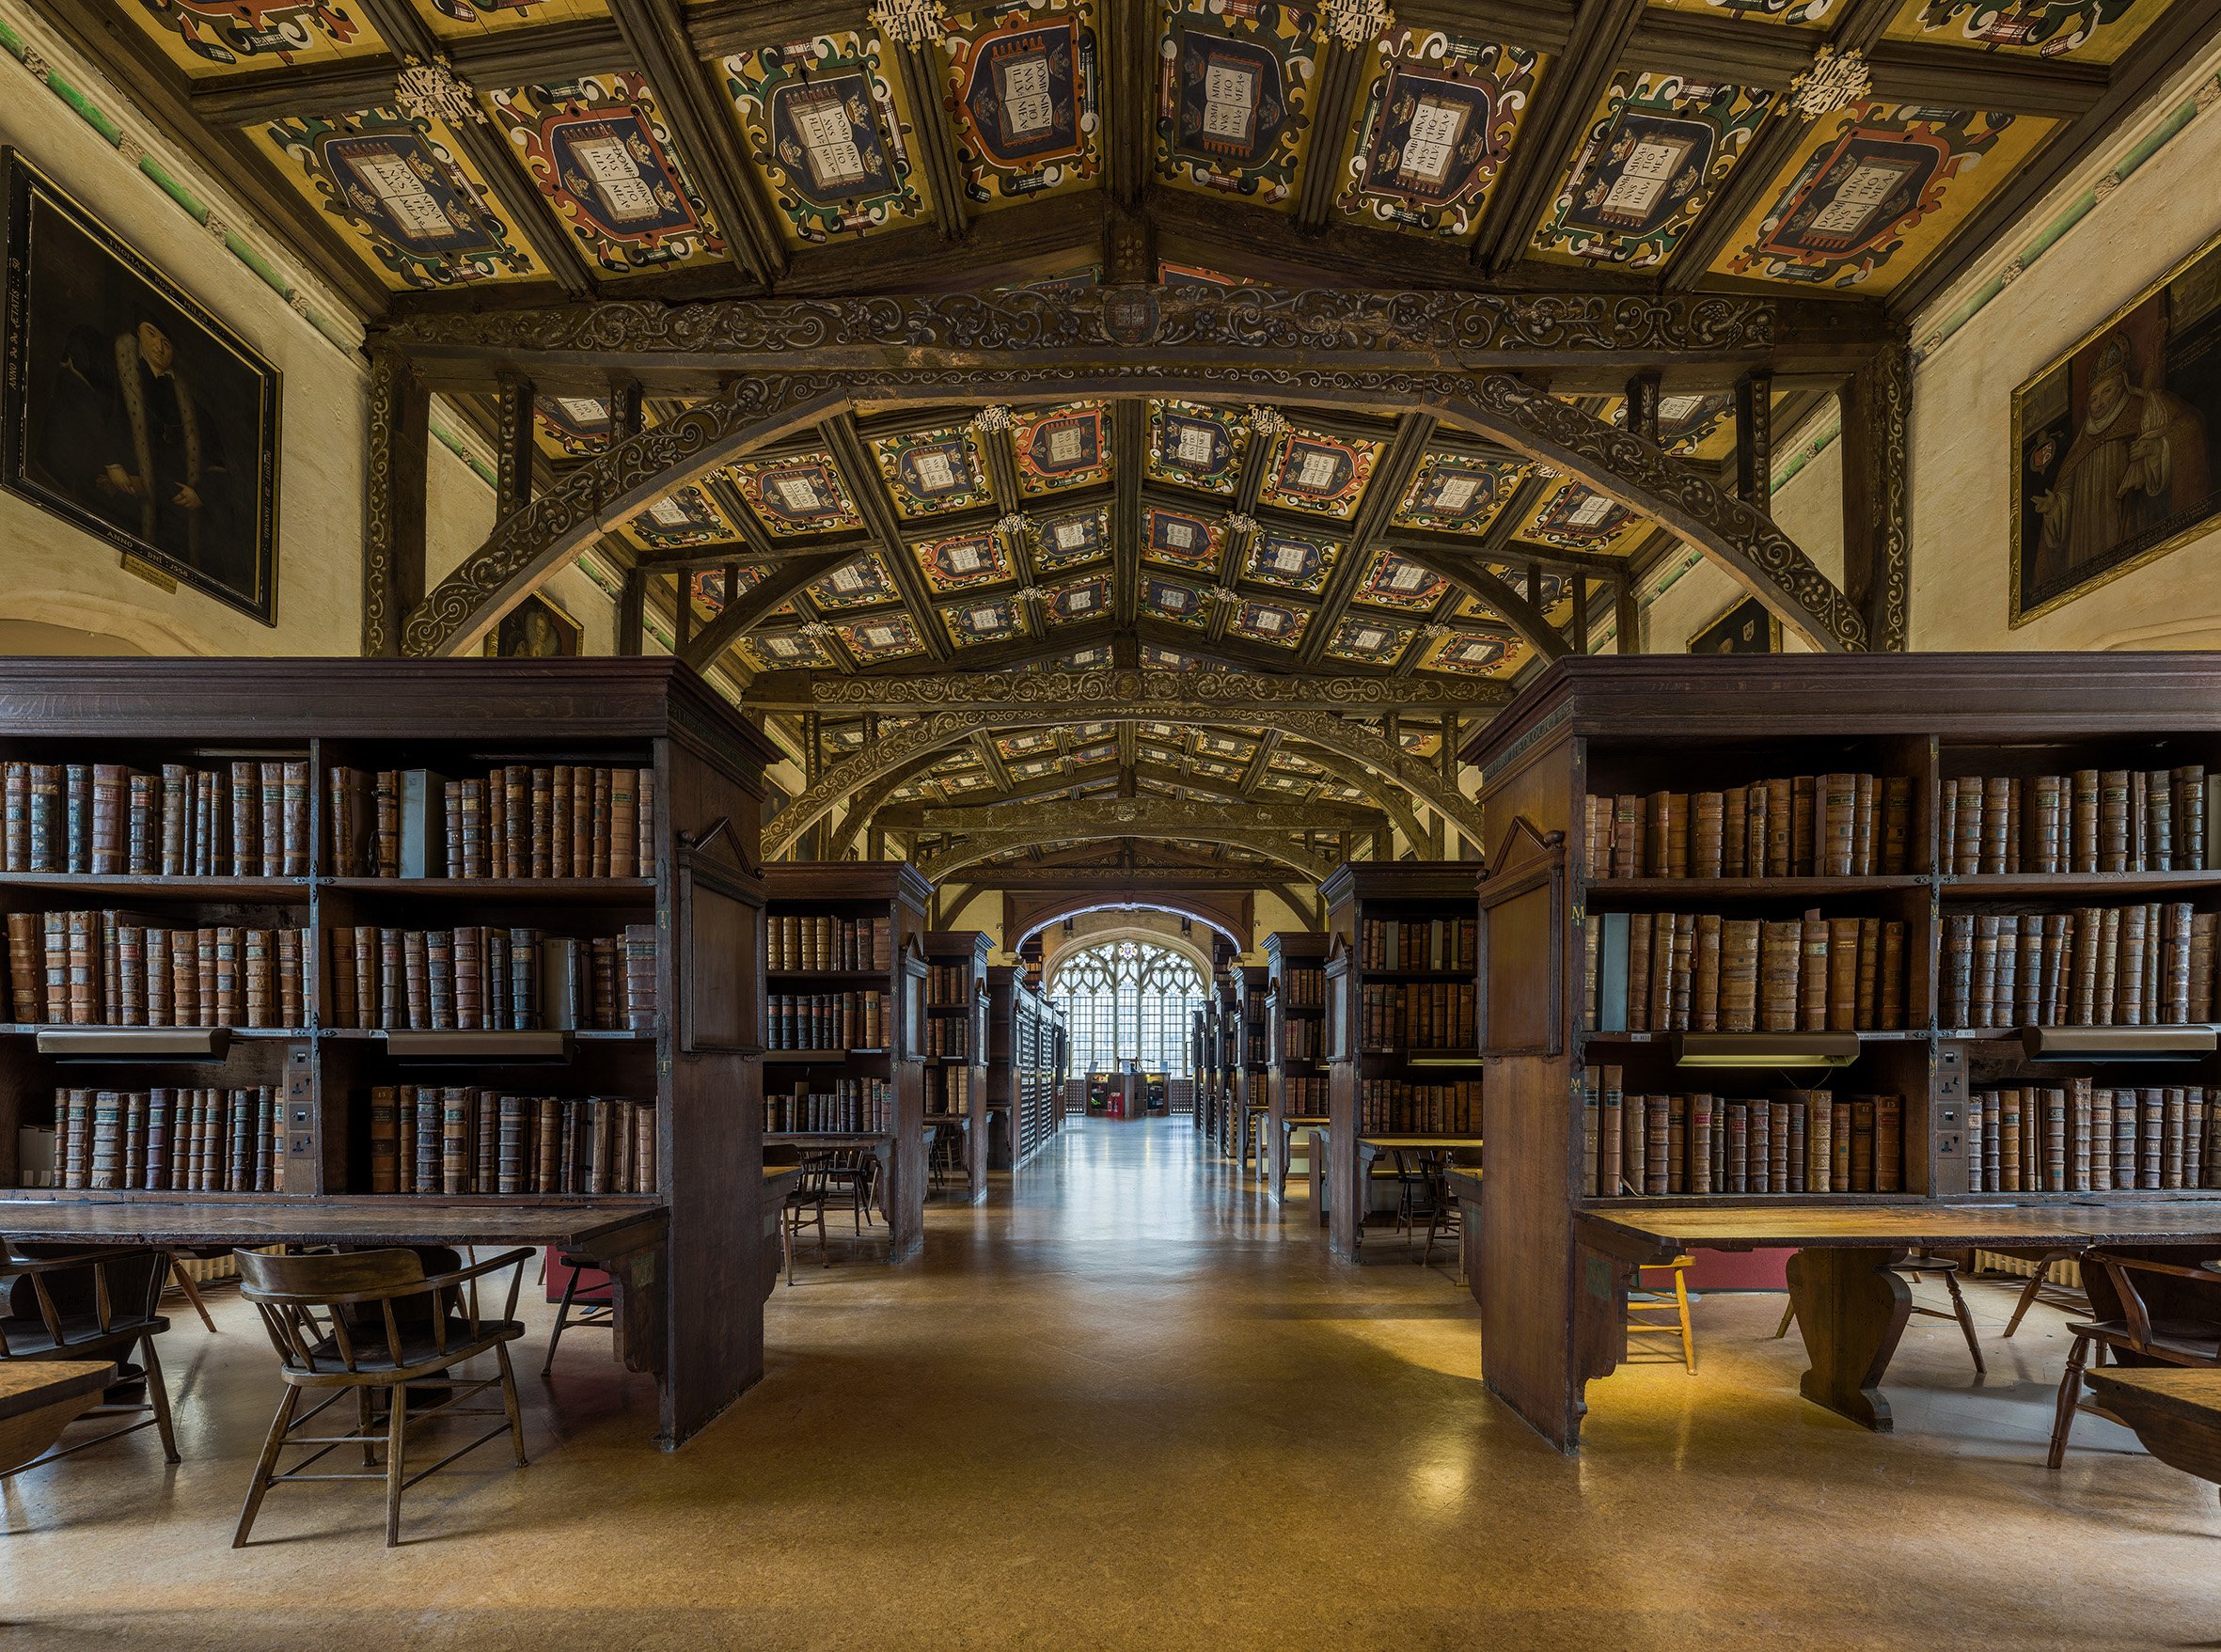 Библиотека. Бодлианская библиотека Оксфорд. Оксфордский университет библиотека. Библиотека (Bodleian Library) Оксфорда. Бодлианская библиотека Оксфордского университета (Оксфорд, 1602).